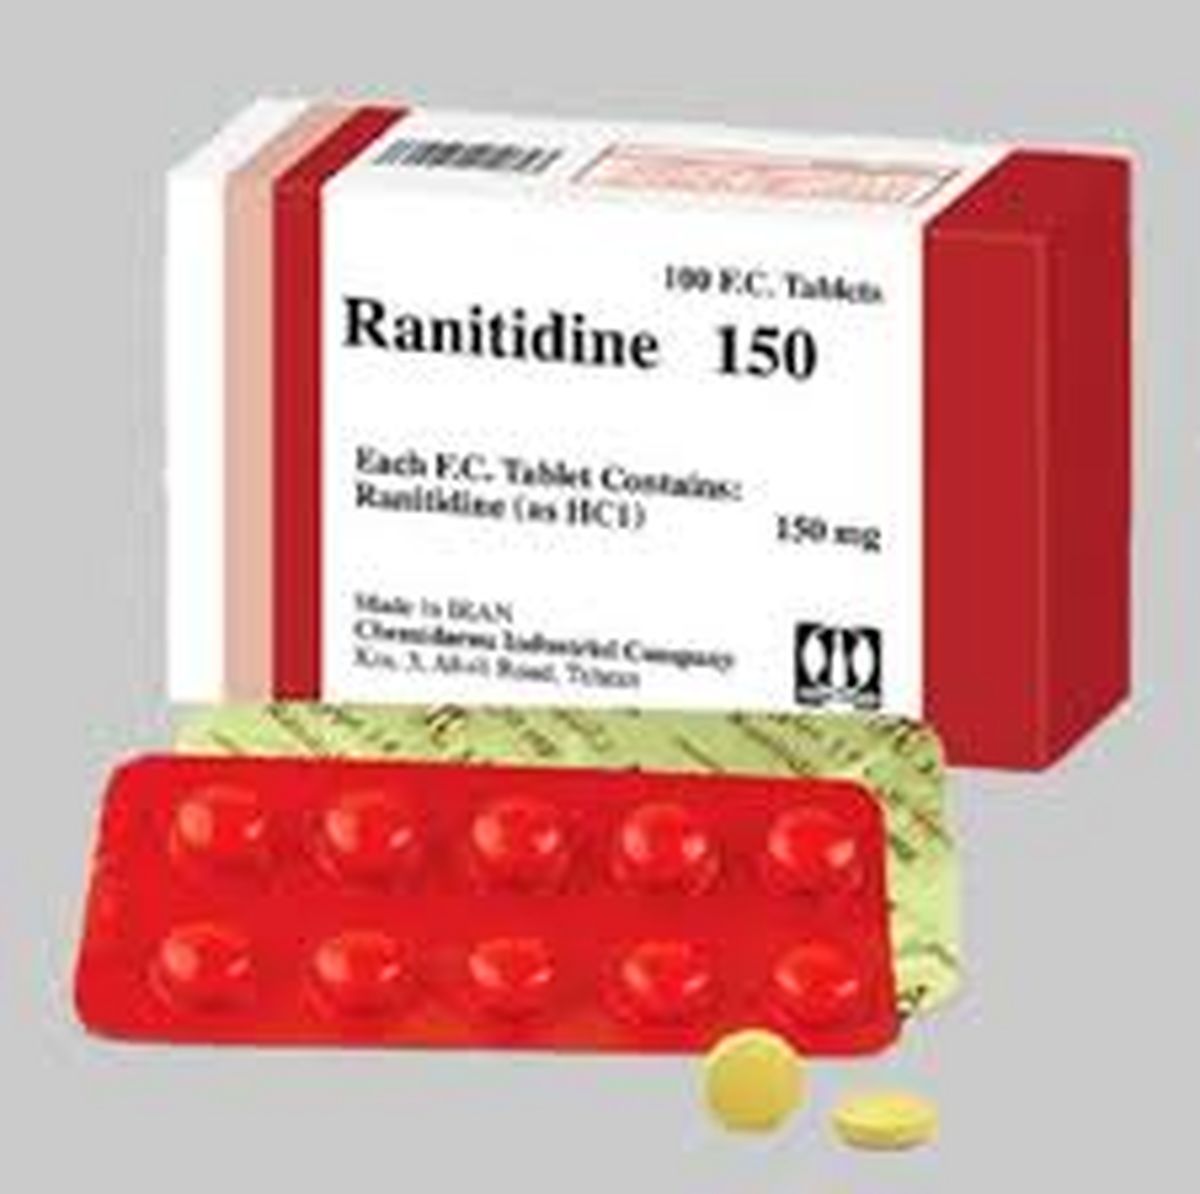 توزیع و تولید داروی "رانیتیدین" متوقف شد + سند